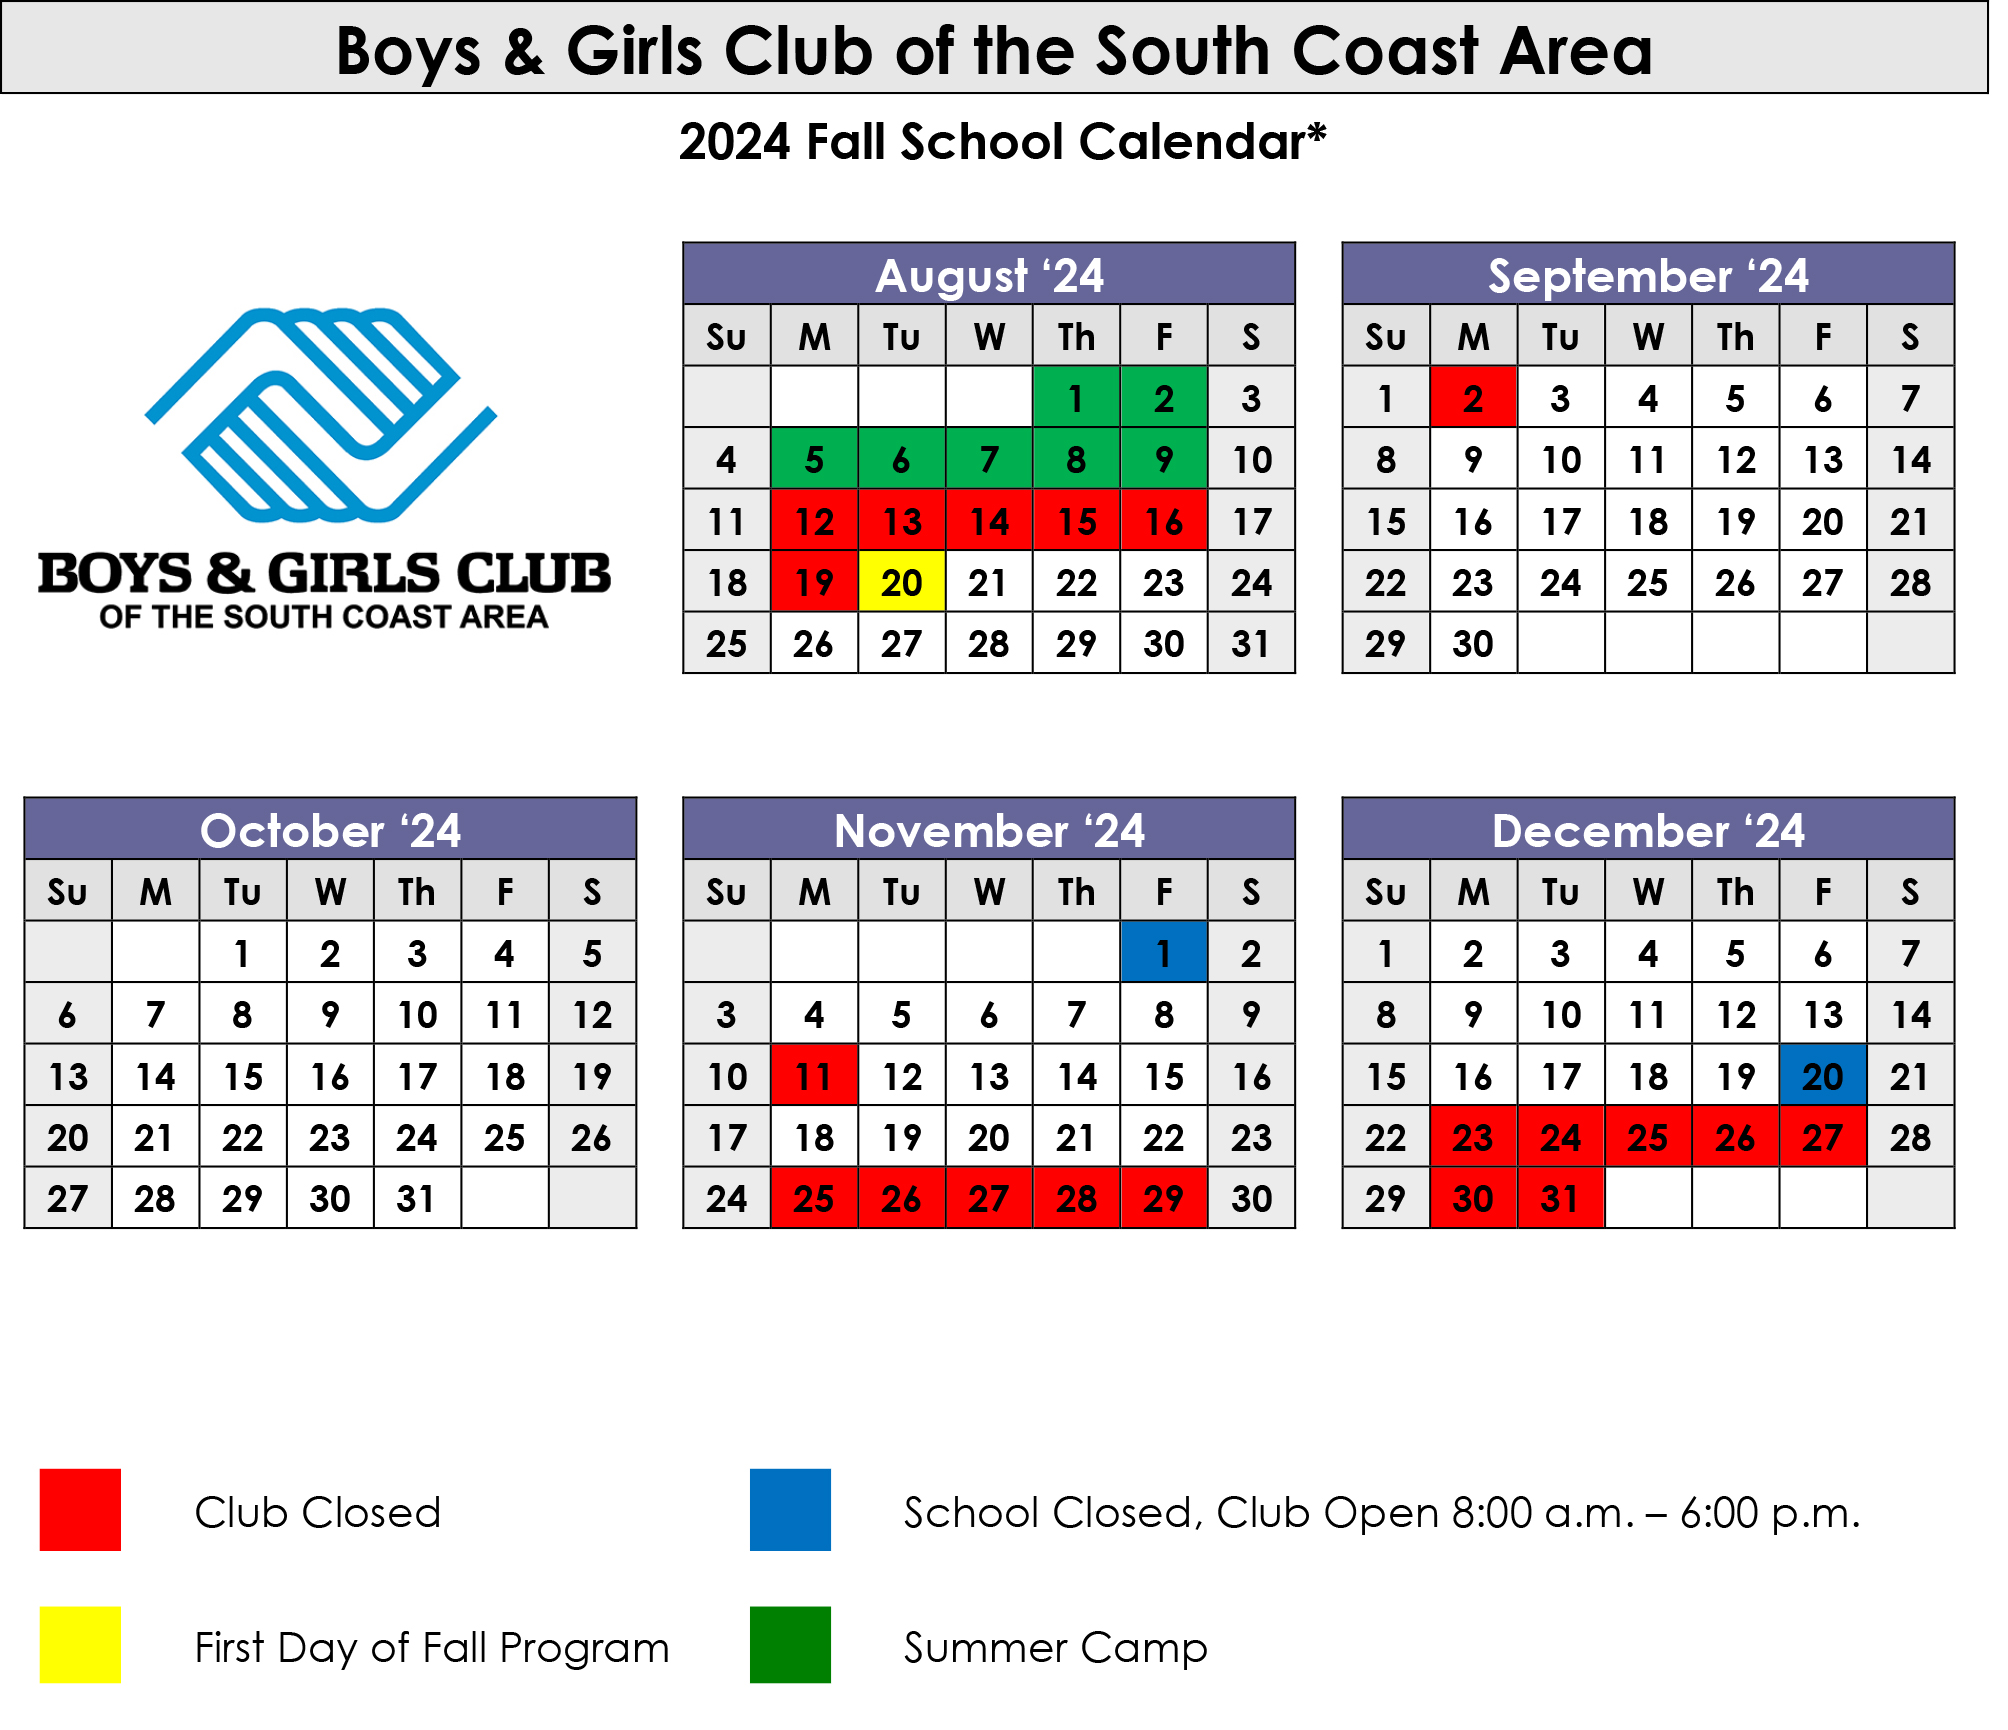 BGCSCA-Club-Calendar-2024-25-FALL